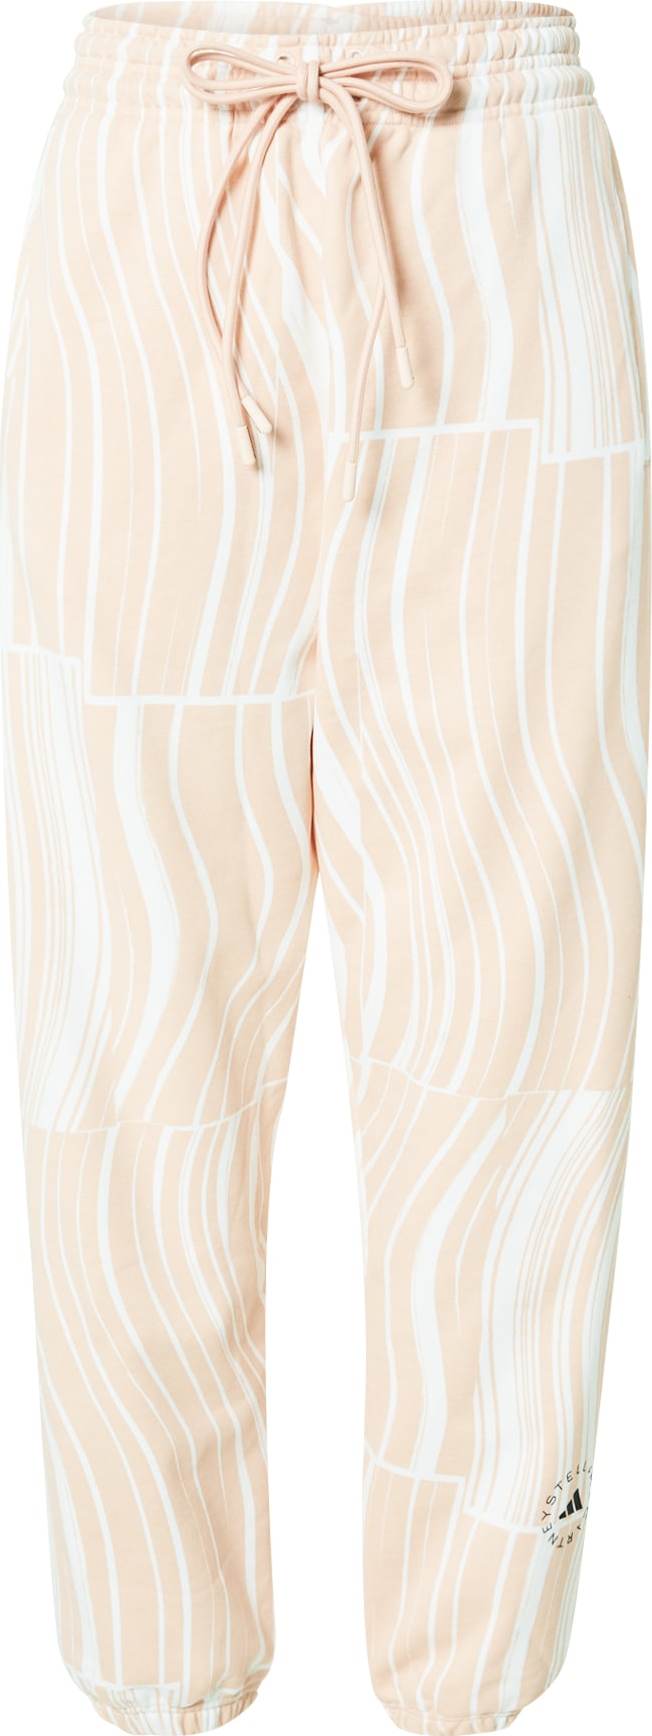 ADIDAS BY STELLA MCCARTNEY Sportovní kalhoty pastelově růžová / černá / bílá